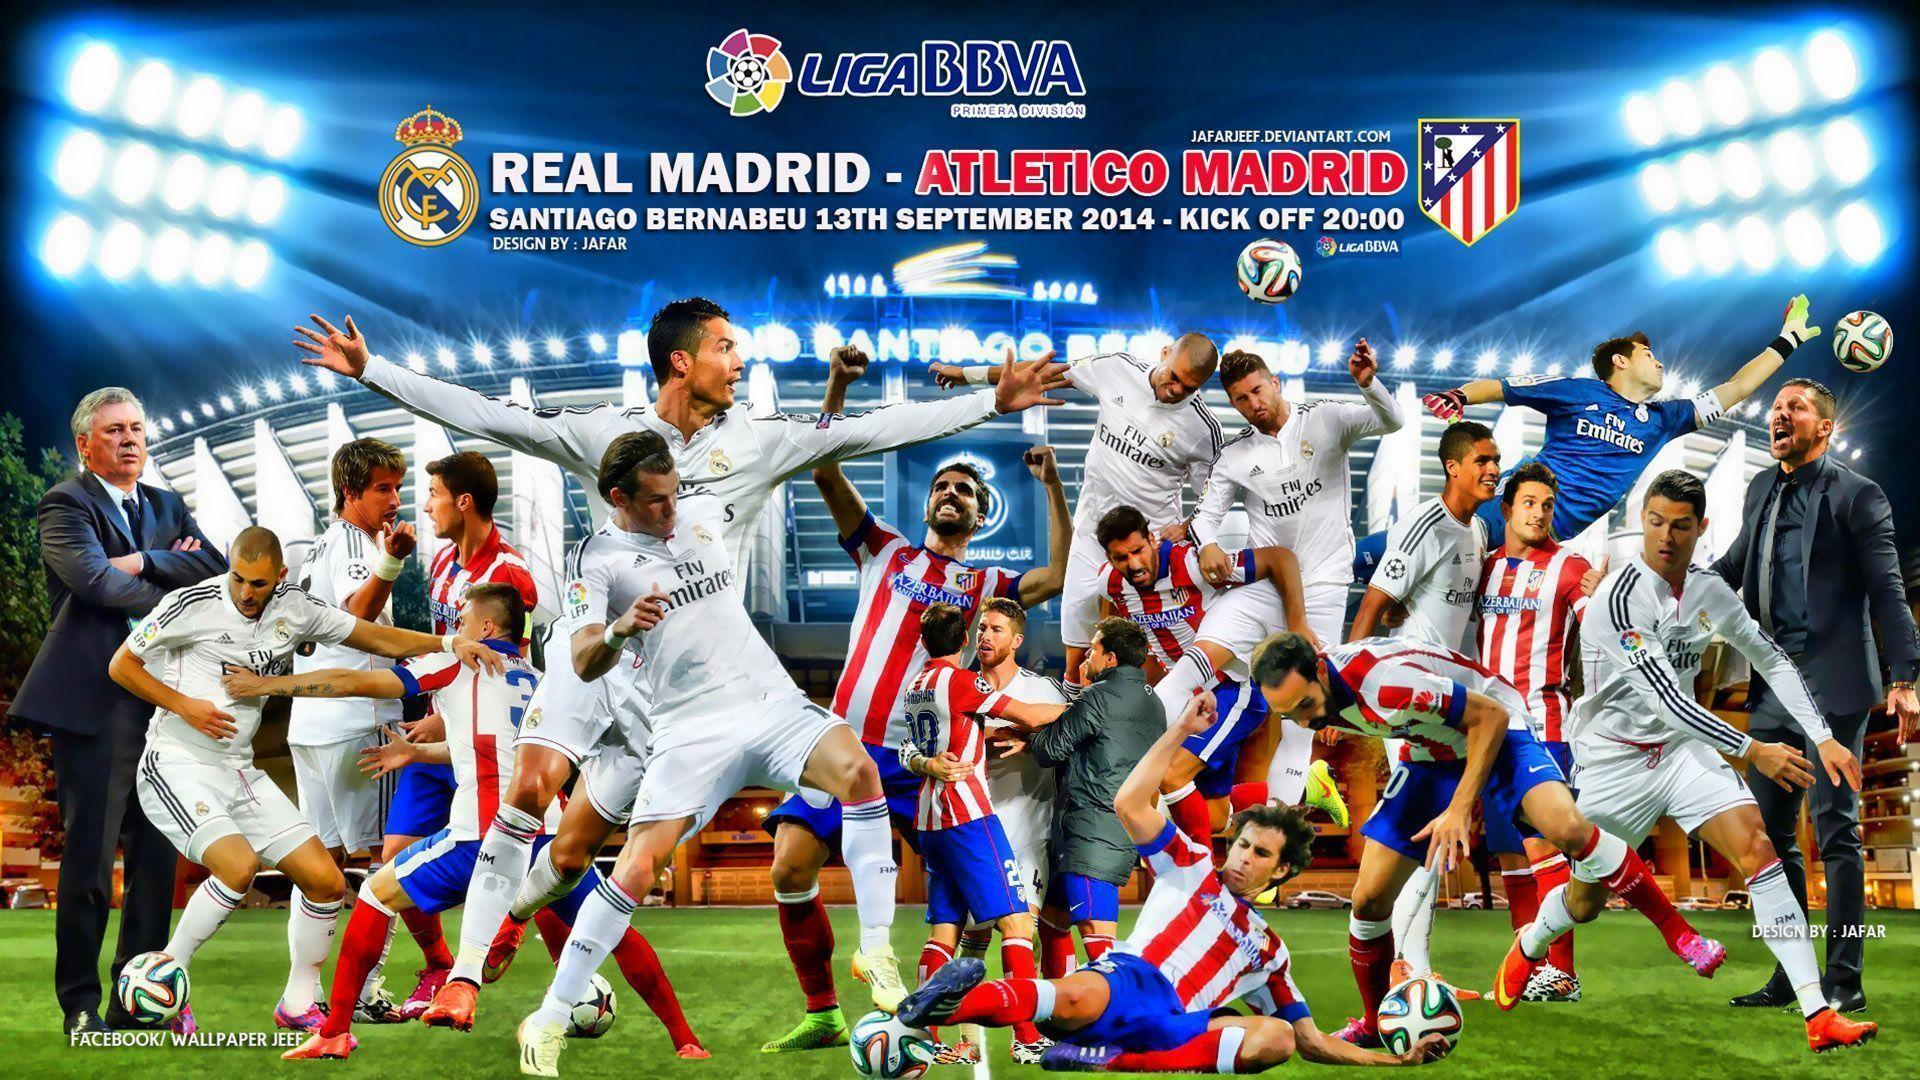 Real Madrid V Atletico Madrid Liga BBVA 2014 15 Wallpaper Wide Or